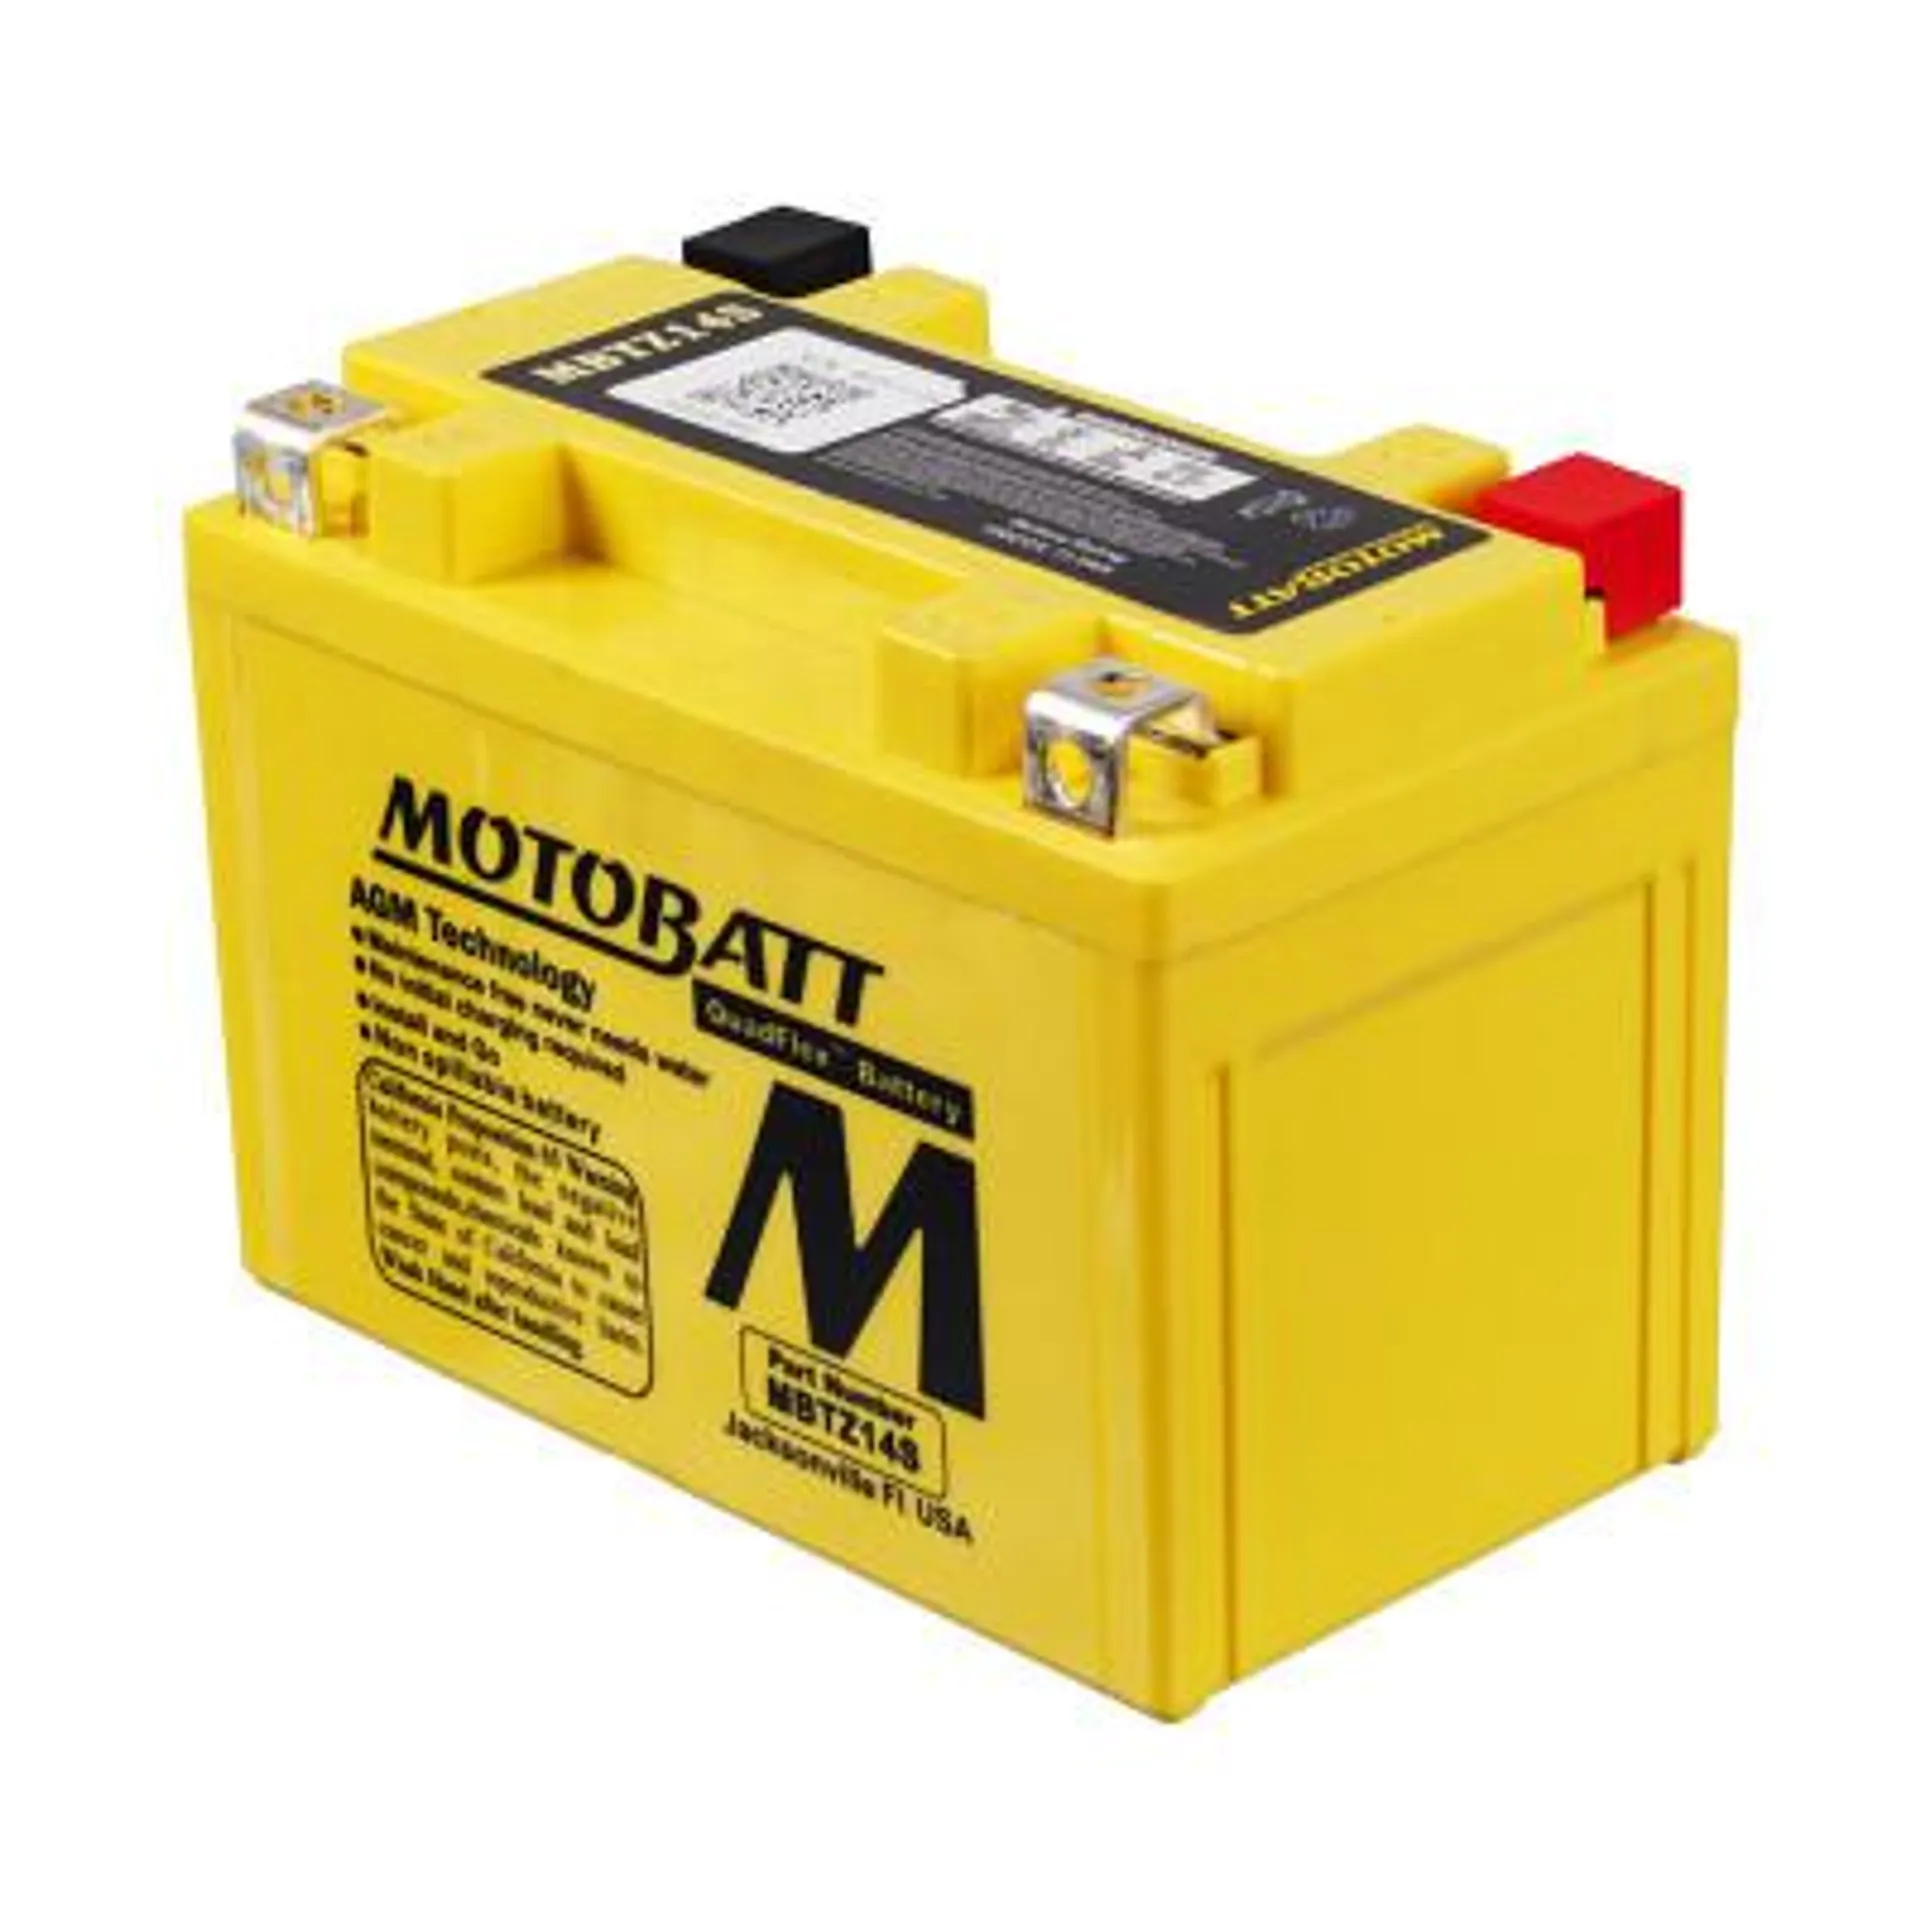 MBTZ14S 12V Motobatt Battery